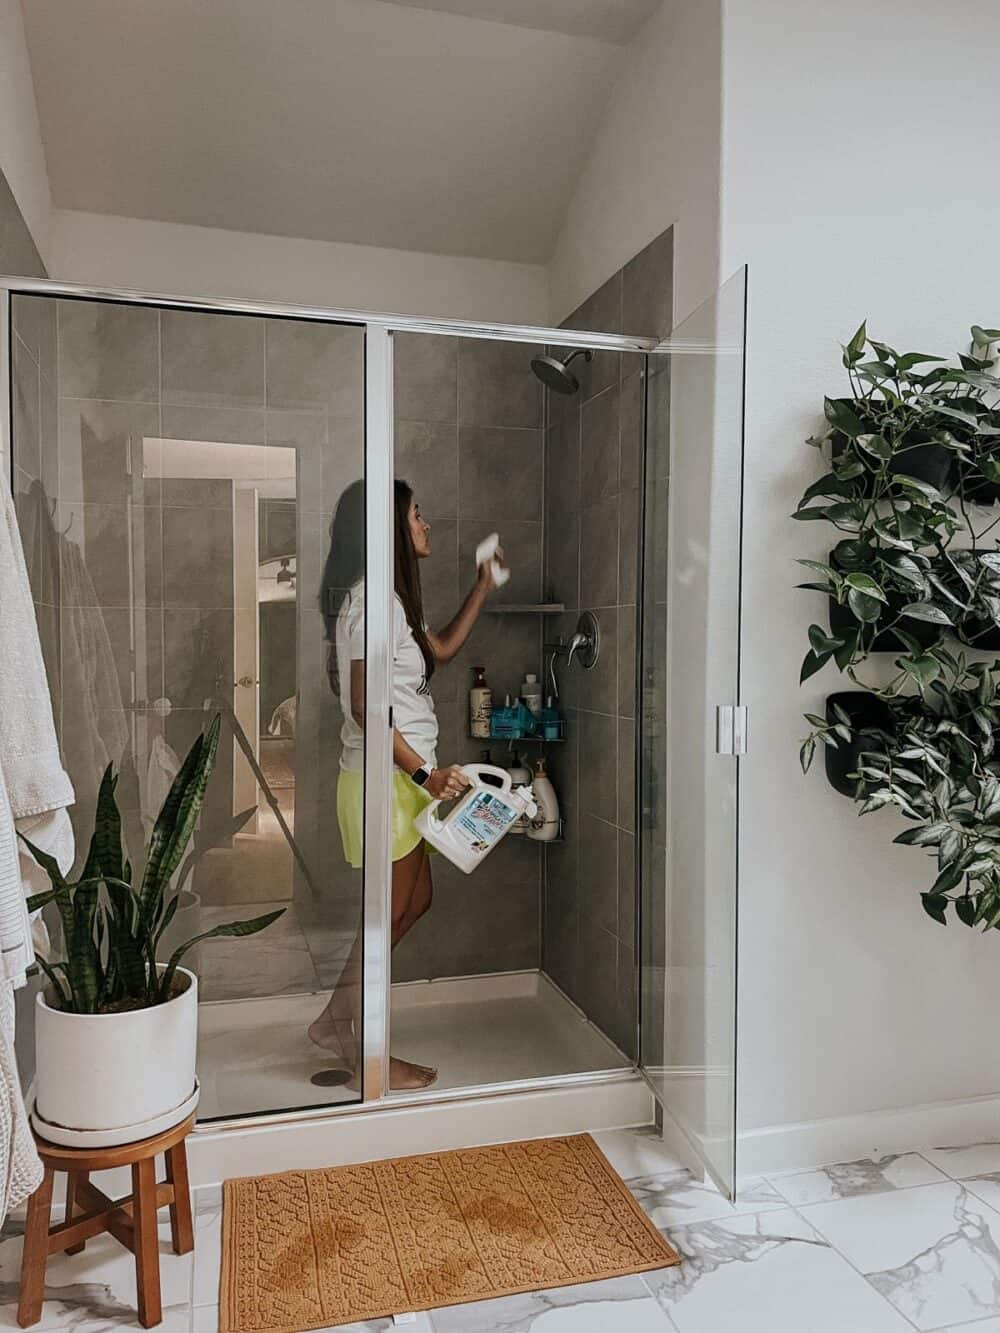 How to Clean Shower Doors - Bella Bathrooms Blog